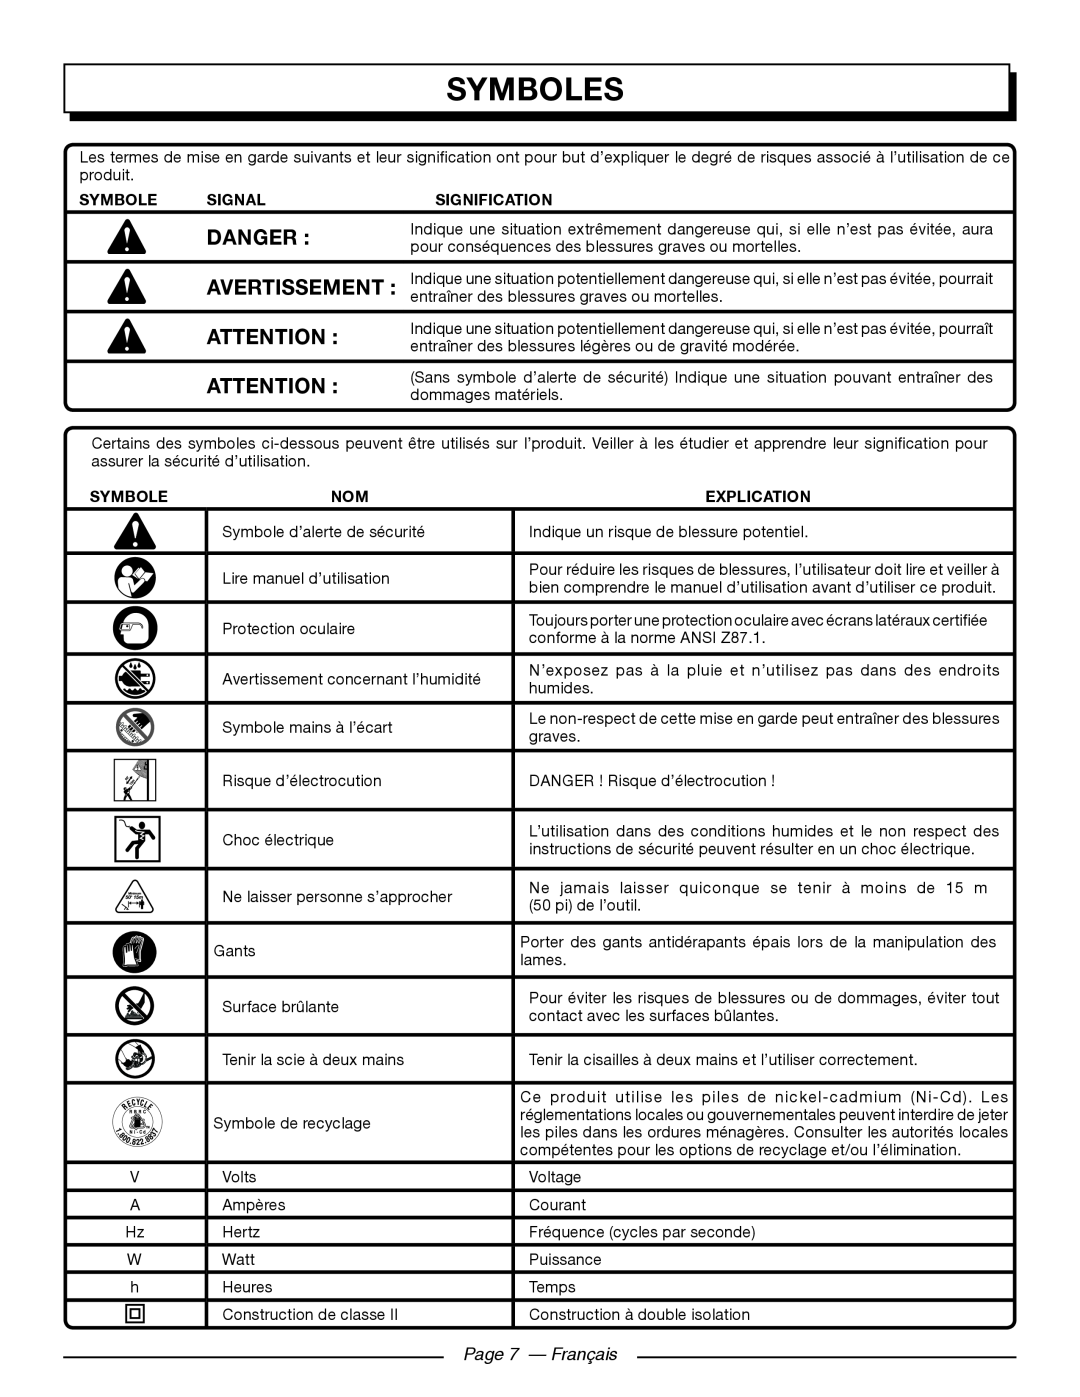 Homelite UT44171 manuel dutilisation Symboles, Page 7 - Français, Danger, Avertissement 